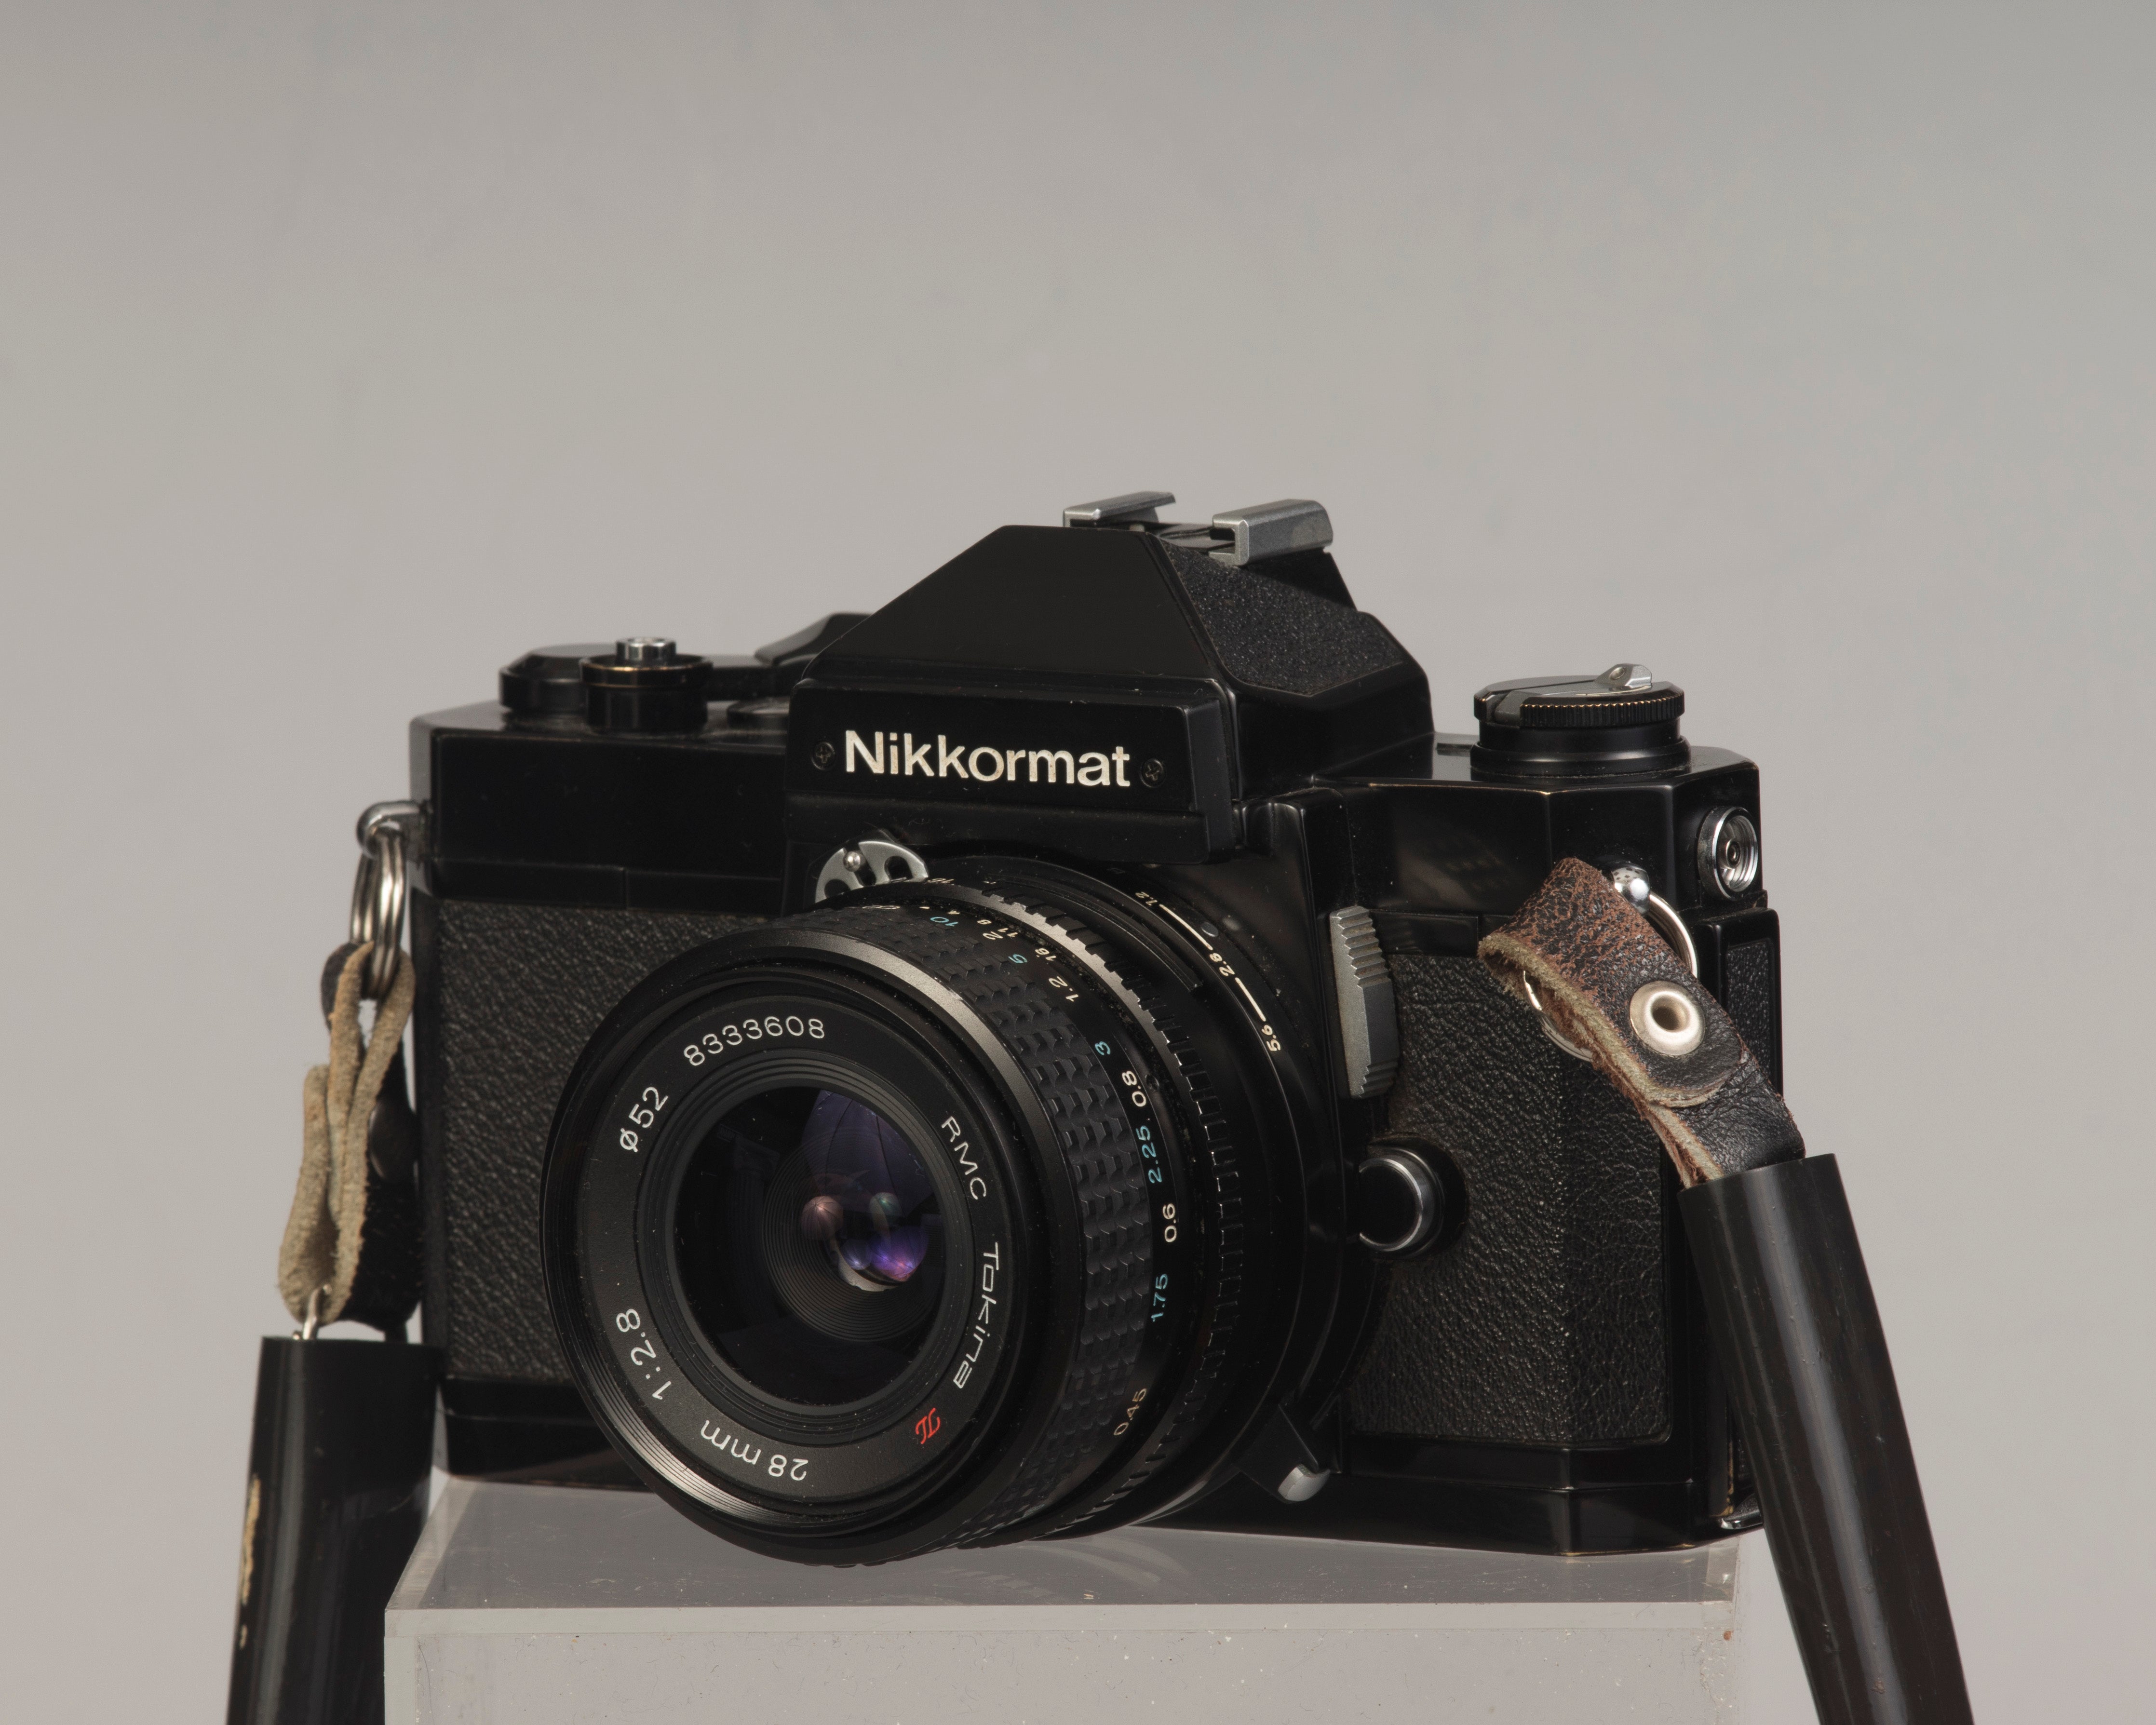 Nikon Nikkormat FT2 35mm SLR film camera w/ RMC Tokina II 28mm f2